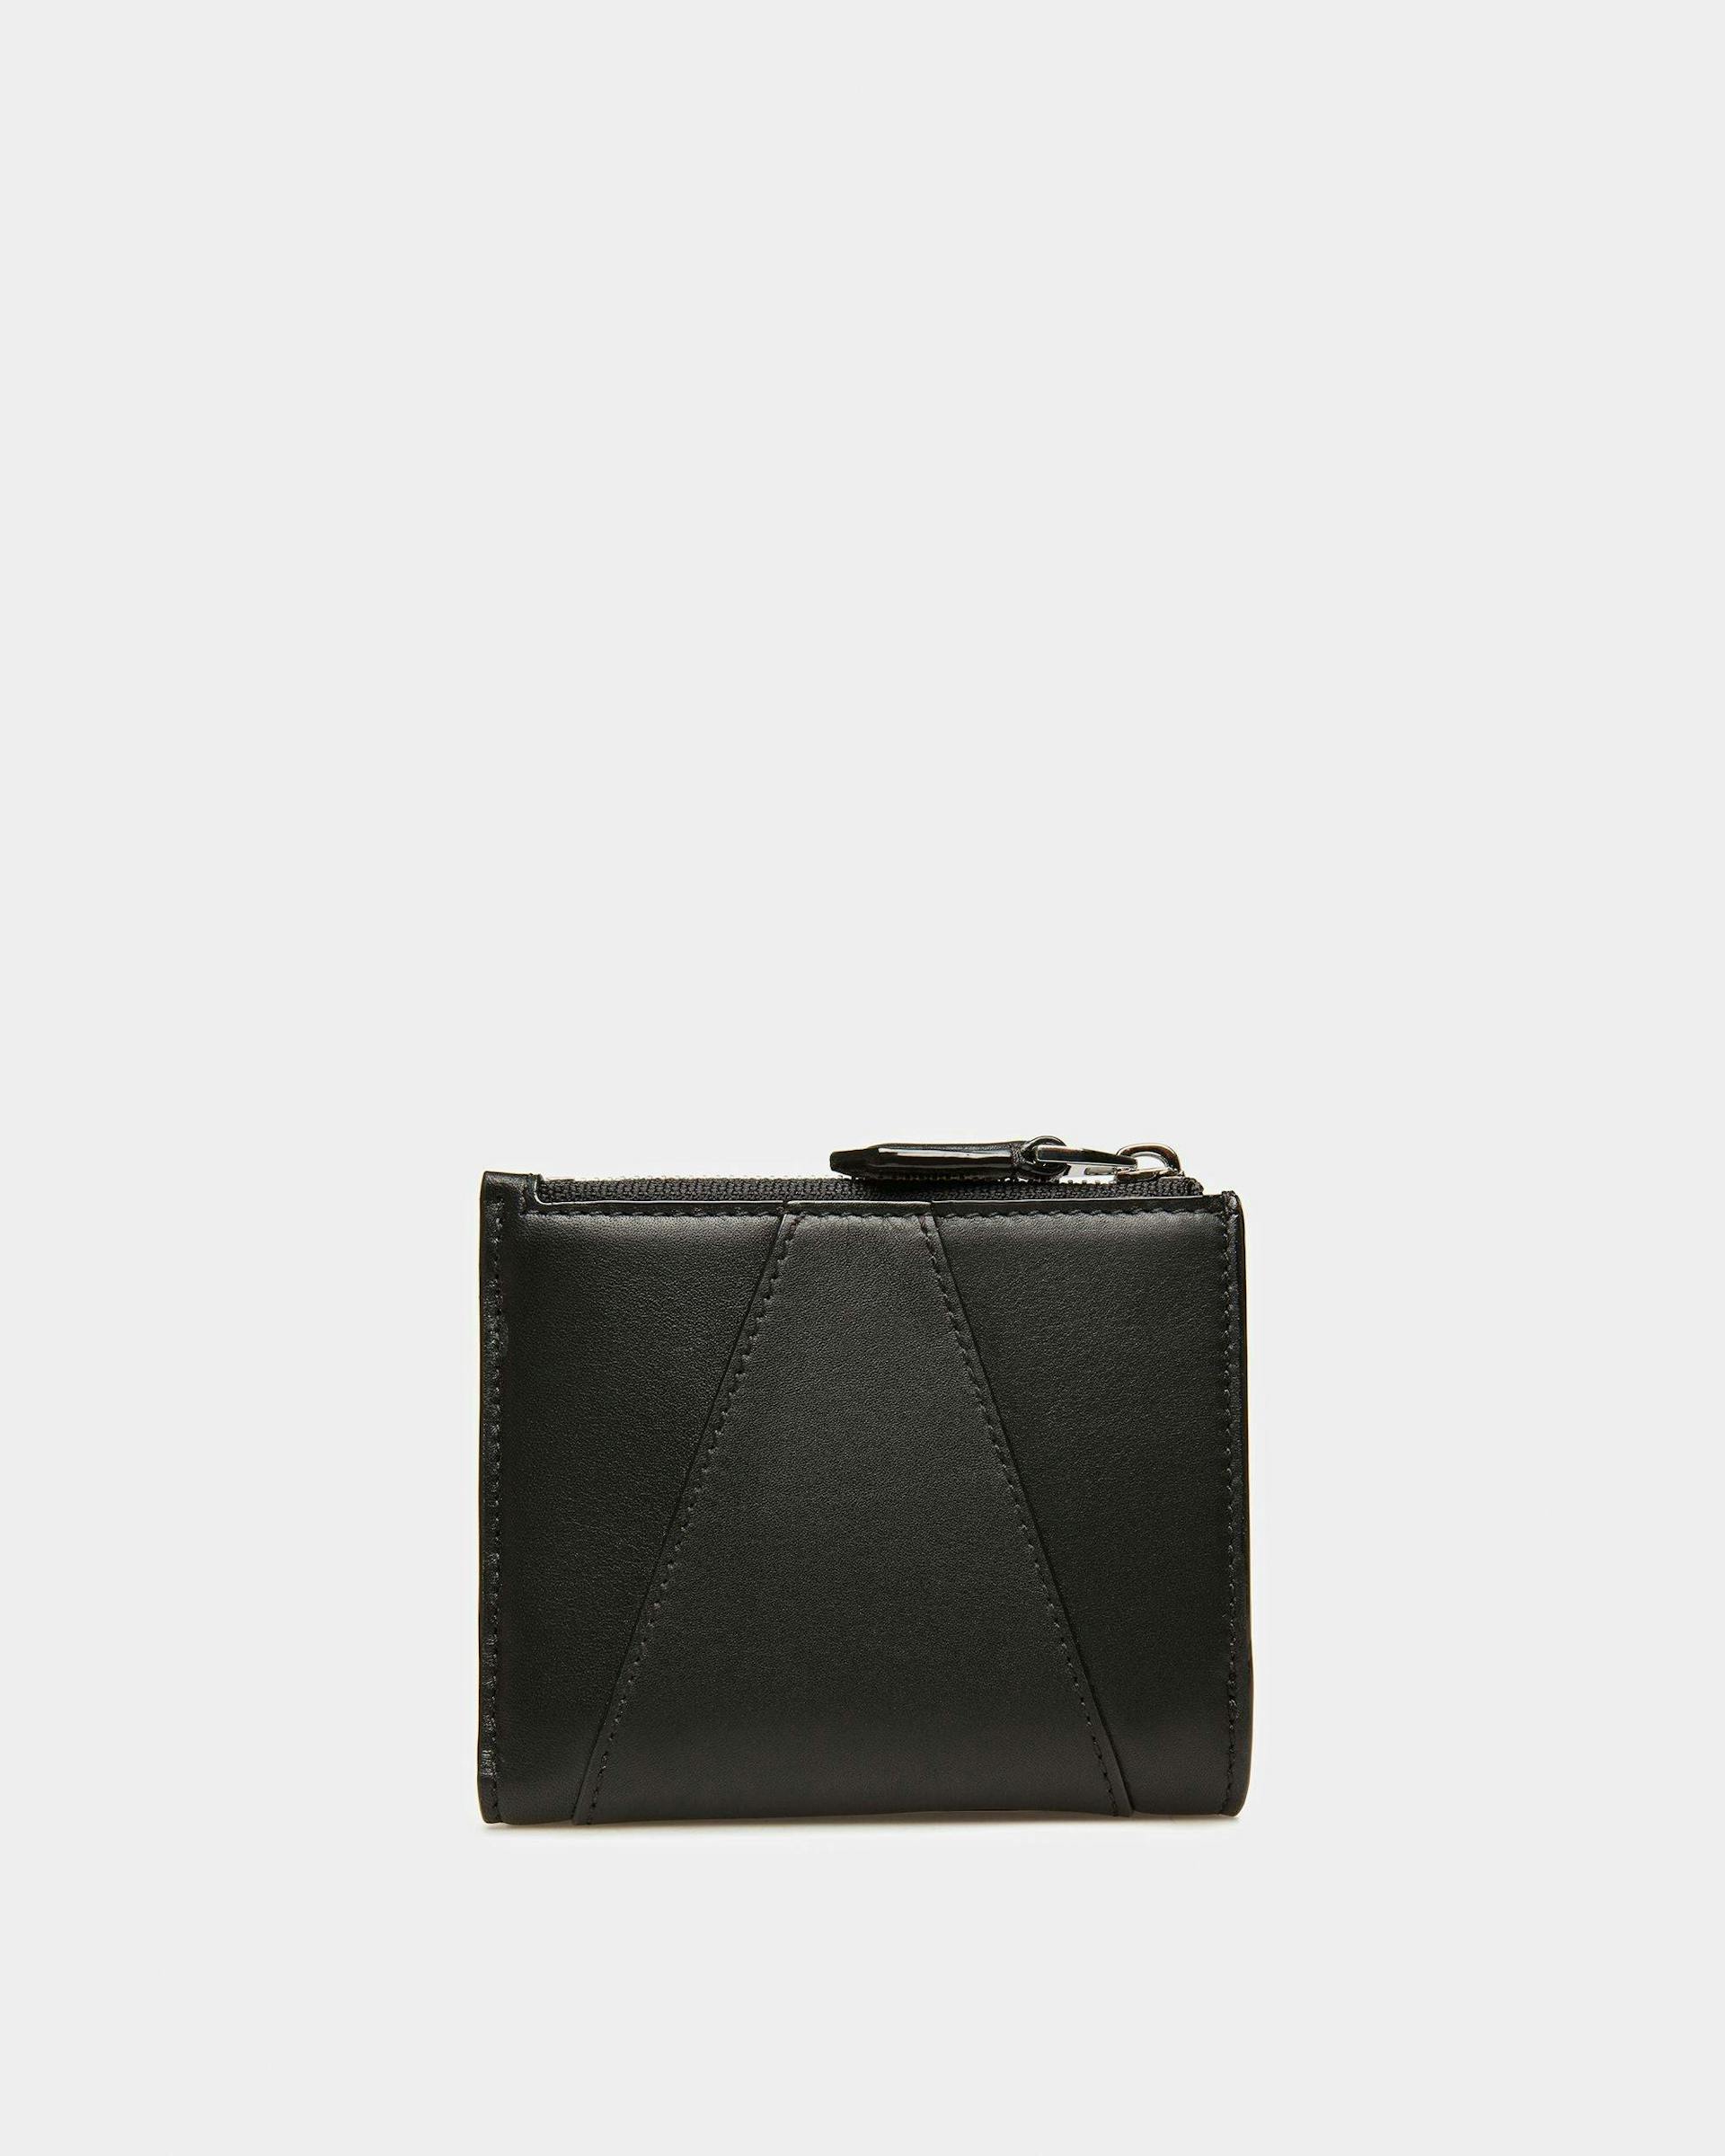 Axeel Leather Wallet In Black - Women's - Bally - 02